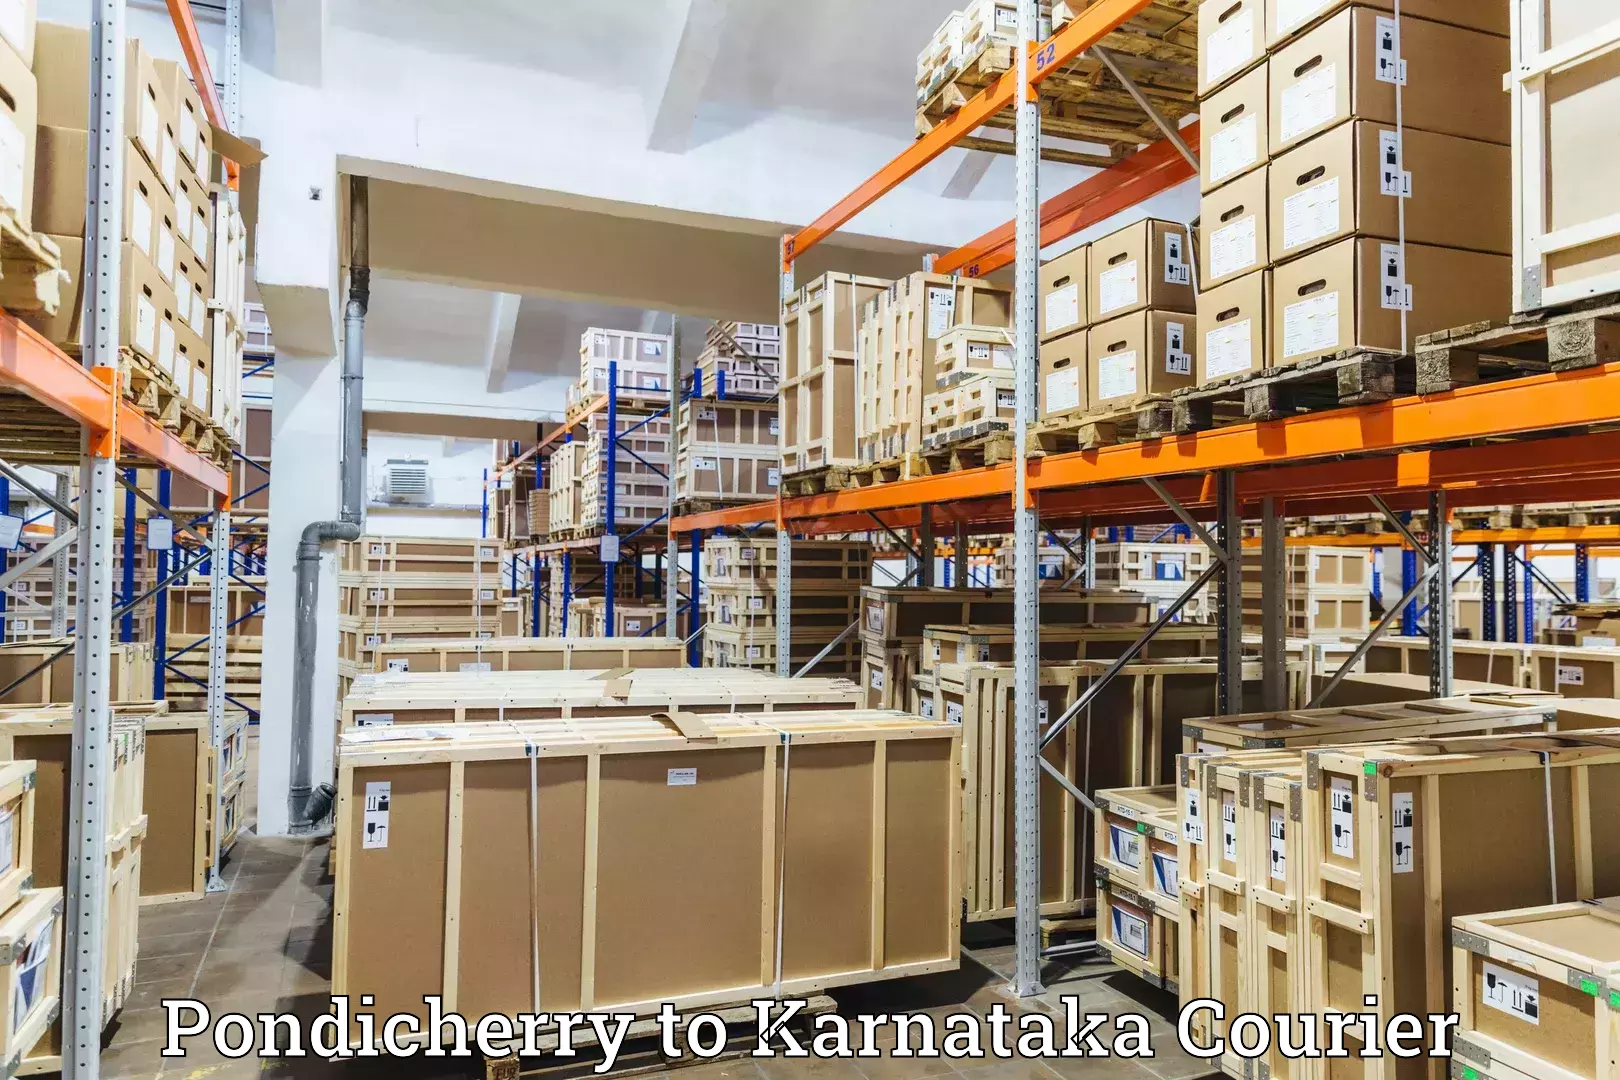 Weekend courier service Pondicherry to Karnataka